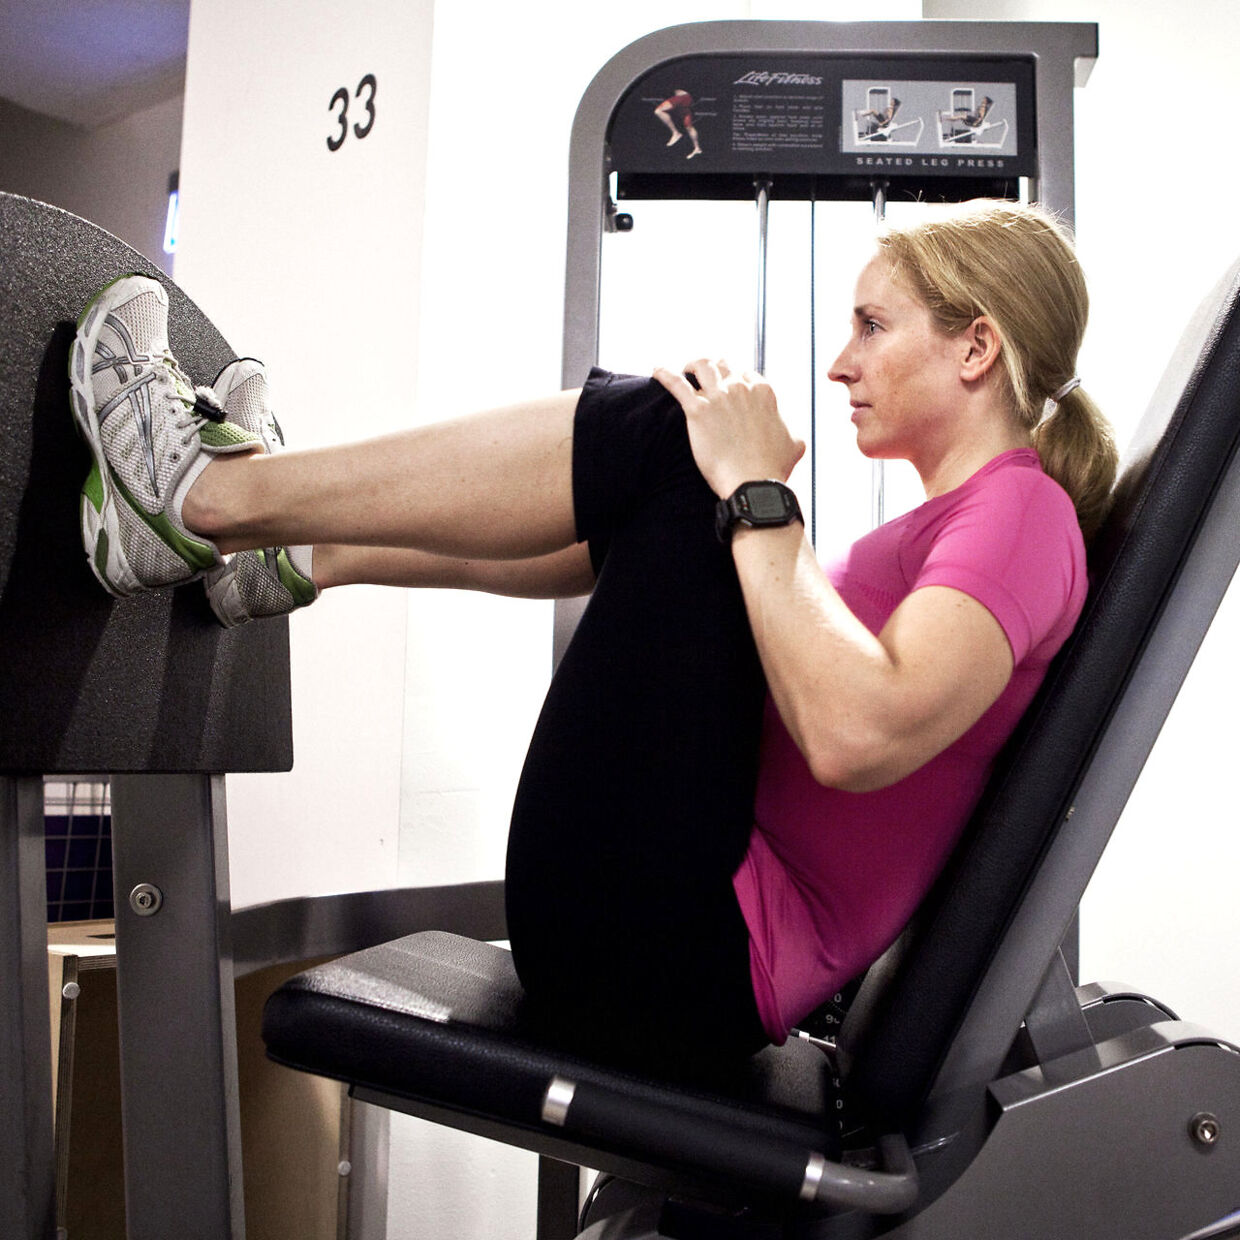 Anna Vagner, personlig træner, viser, hvordan man skal bruge fitnessmaskinerne i træningscenteret korrekt. 2. øvelse - forkert siddestilling